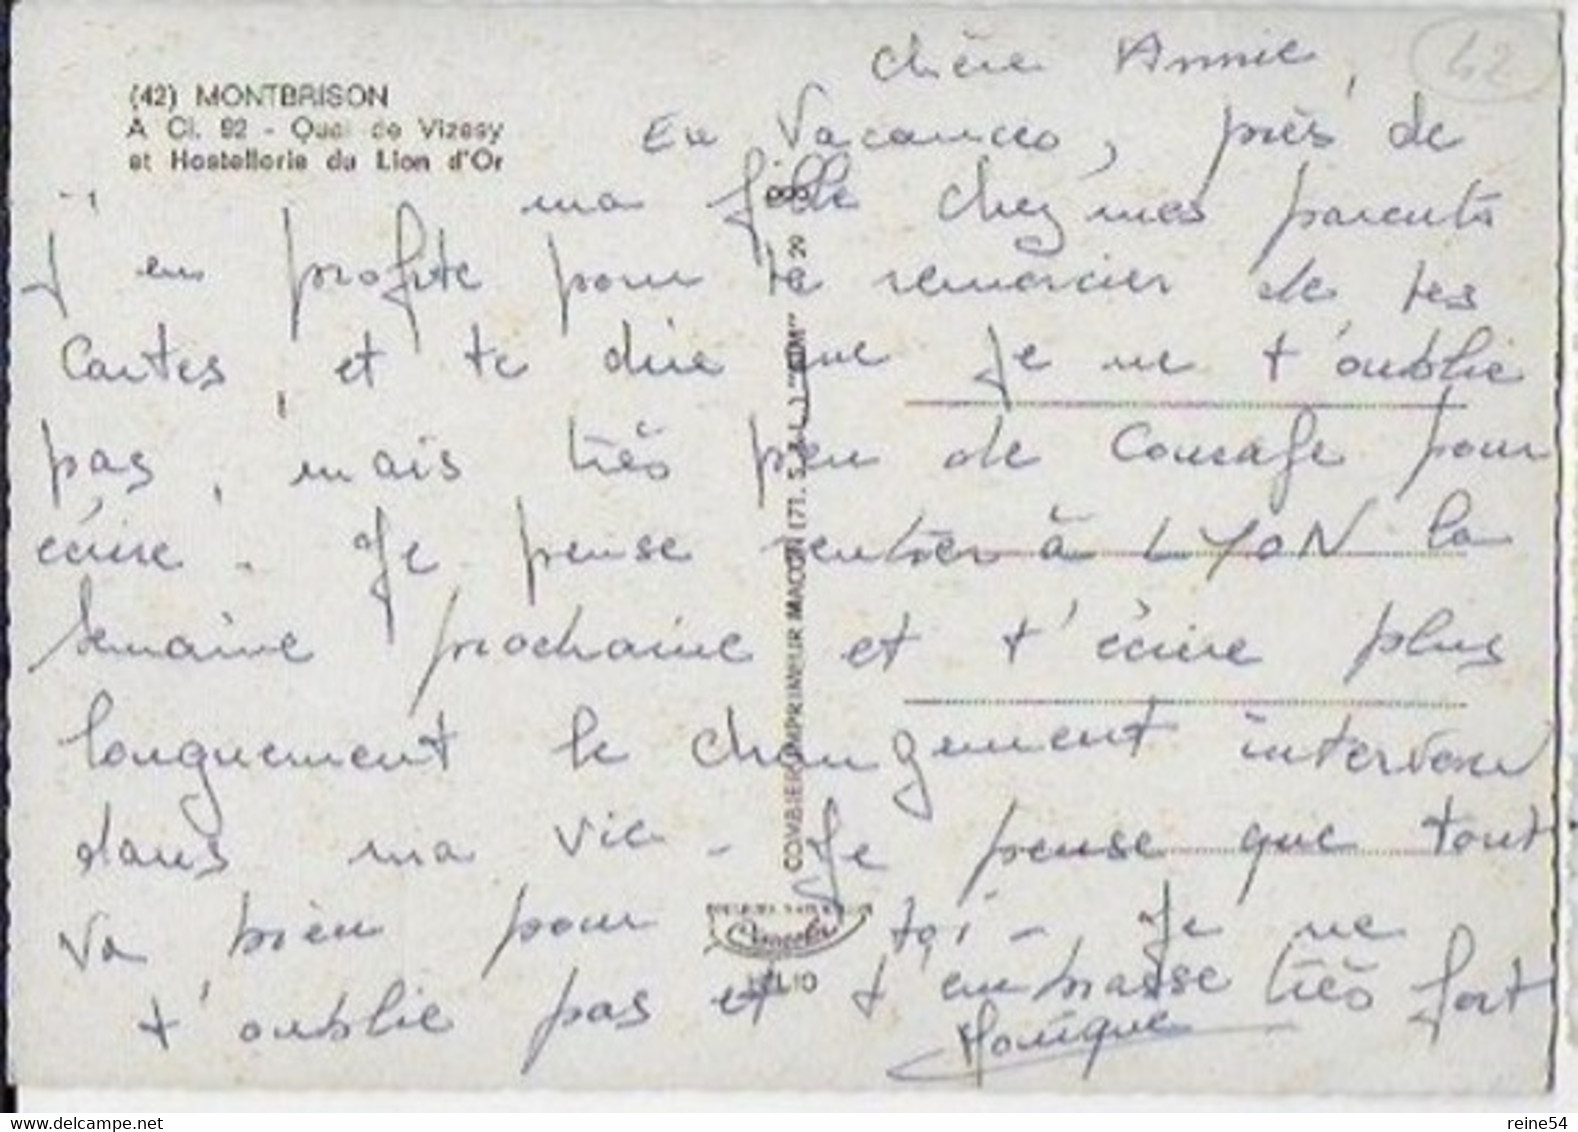 42 - MONTBRISON - Quai De Vizesy Et Hostellerie Du Lion D'Or- A CL. 92- Combier Imprimeur MACON- CIM (vieilles Voitures) - Montbrison